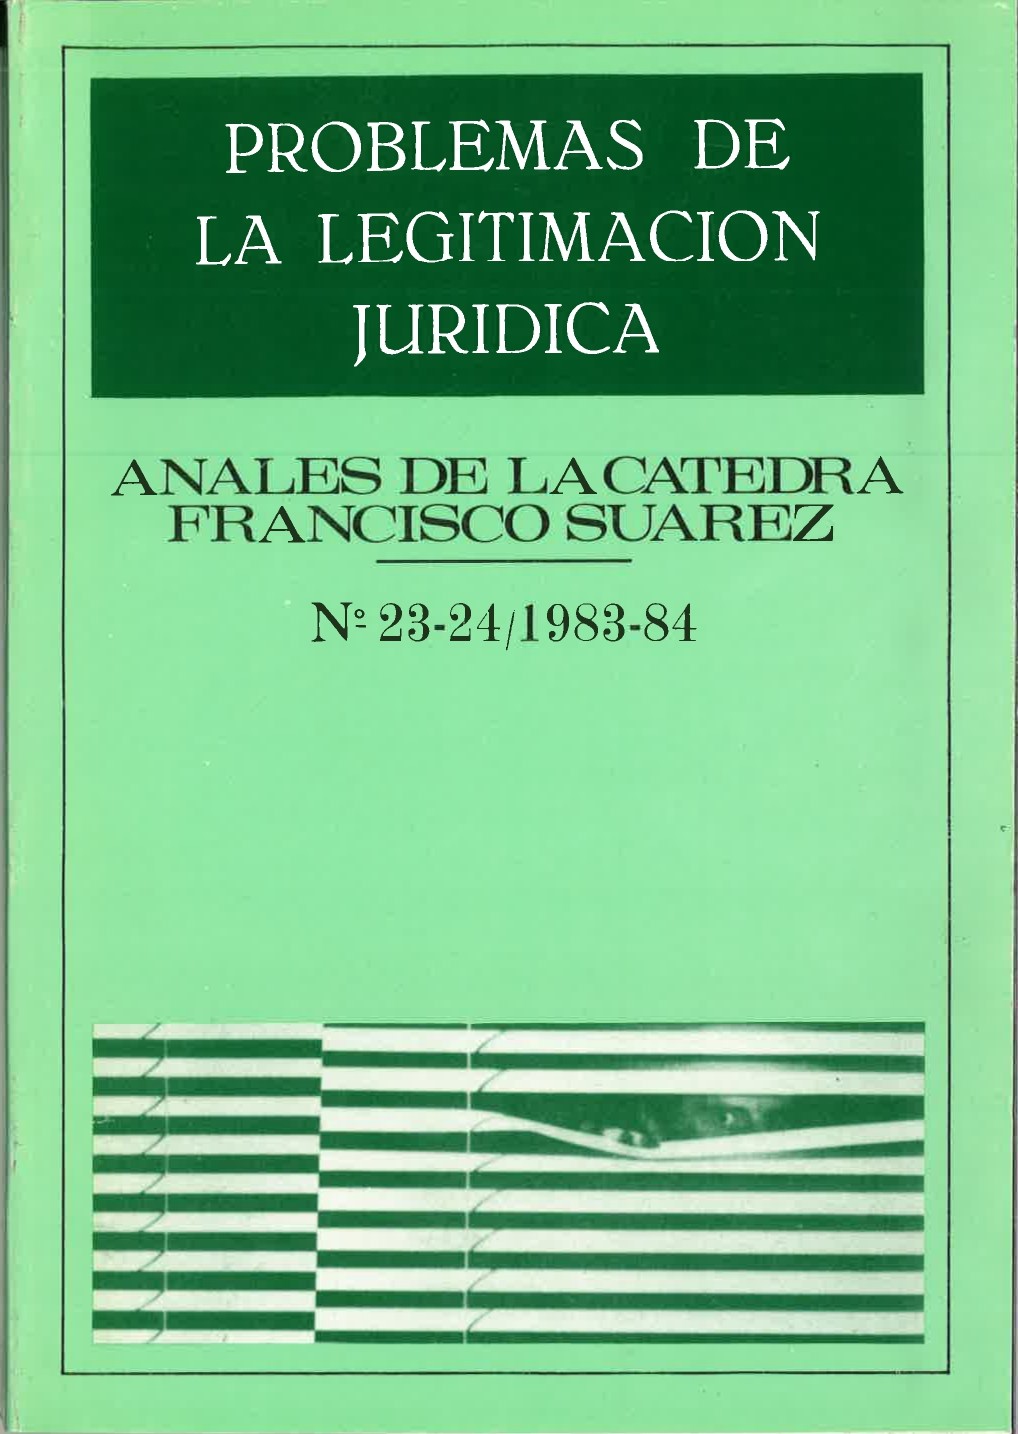 					Ver Vol. 23 (1983): Problemas de legitimación jurídica
				